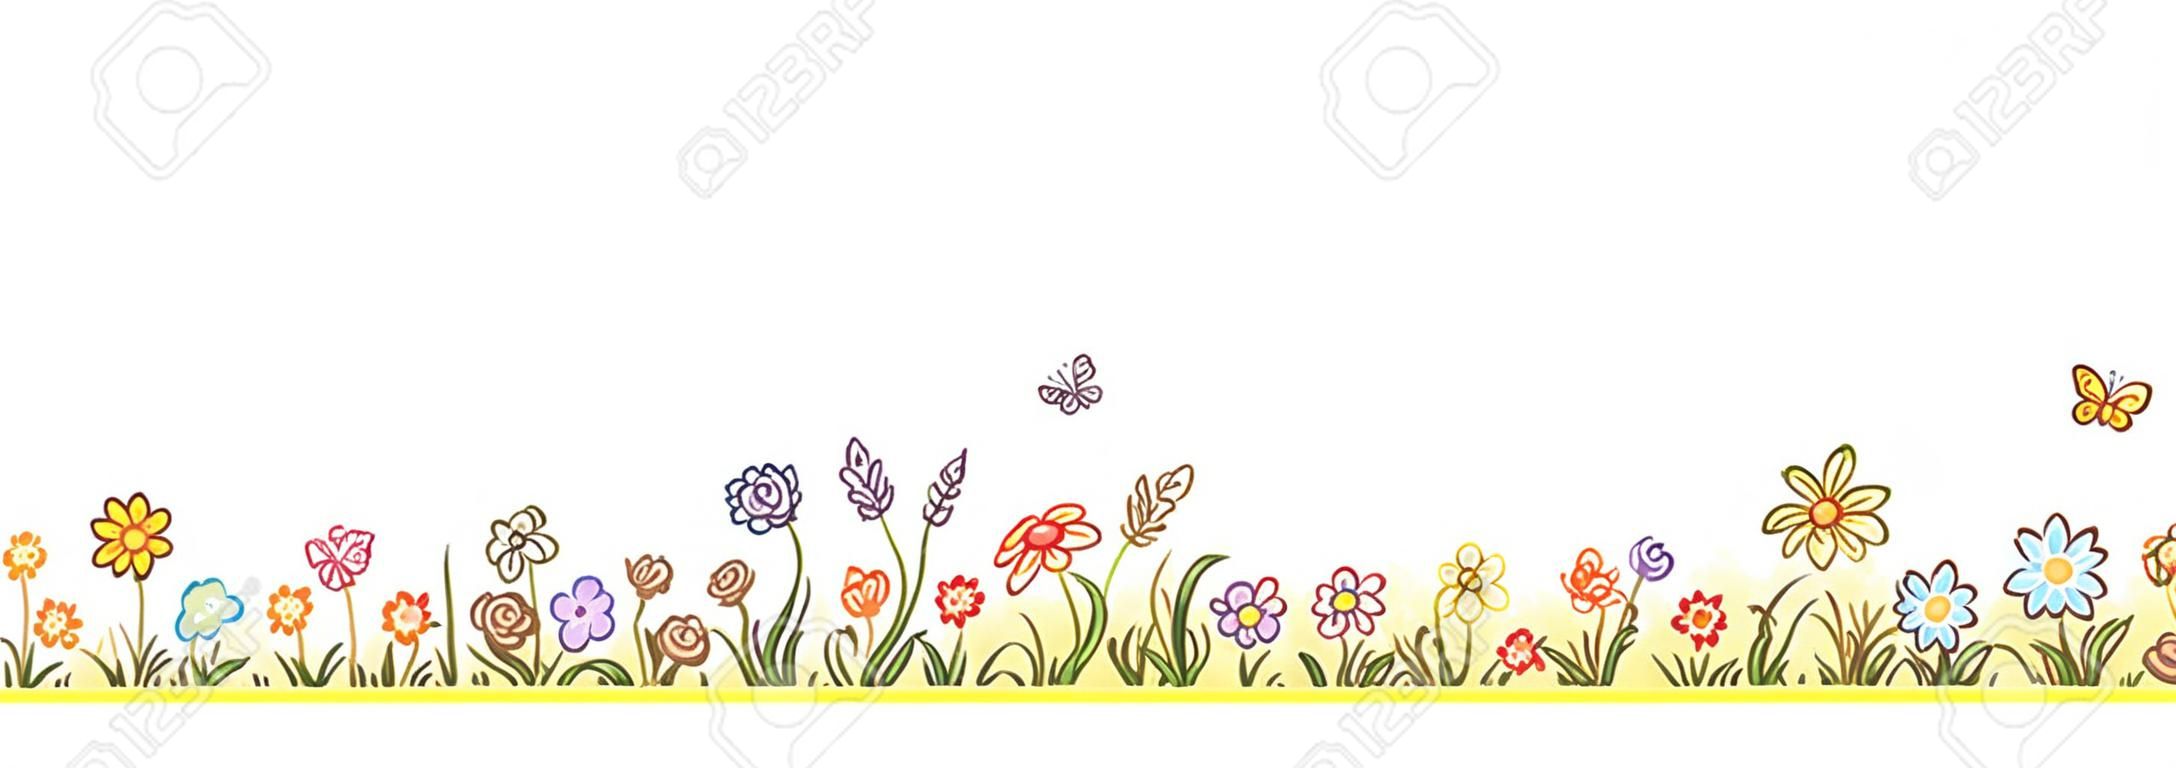 Borda de flor colorida com muitas flores de desenhos animados, grama e borboletas, sem gradientes